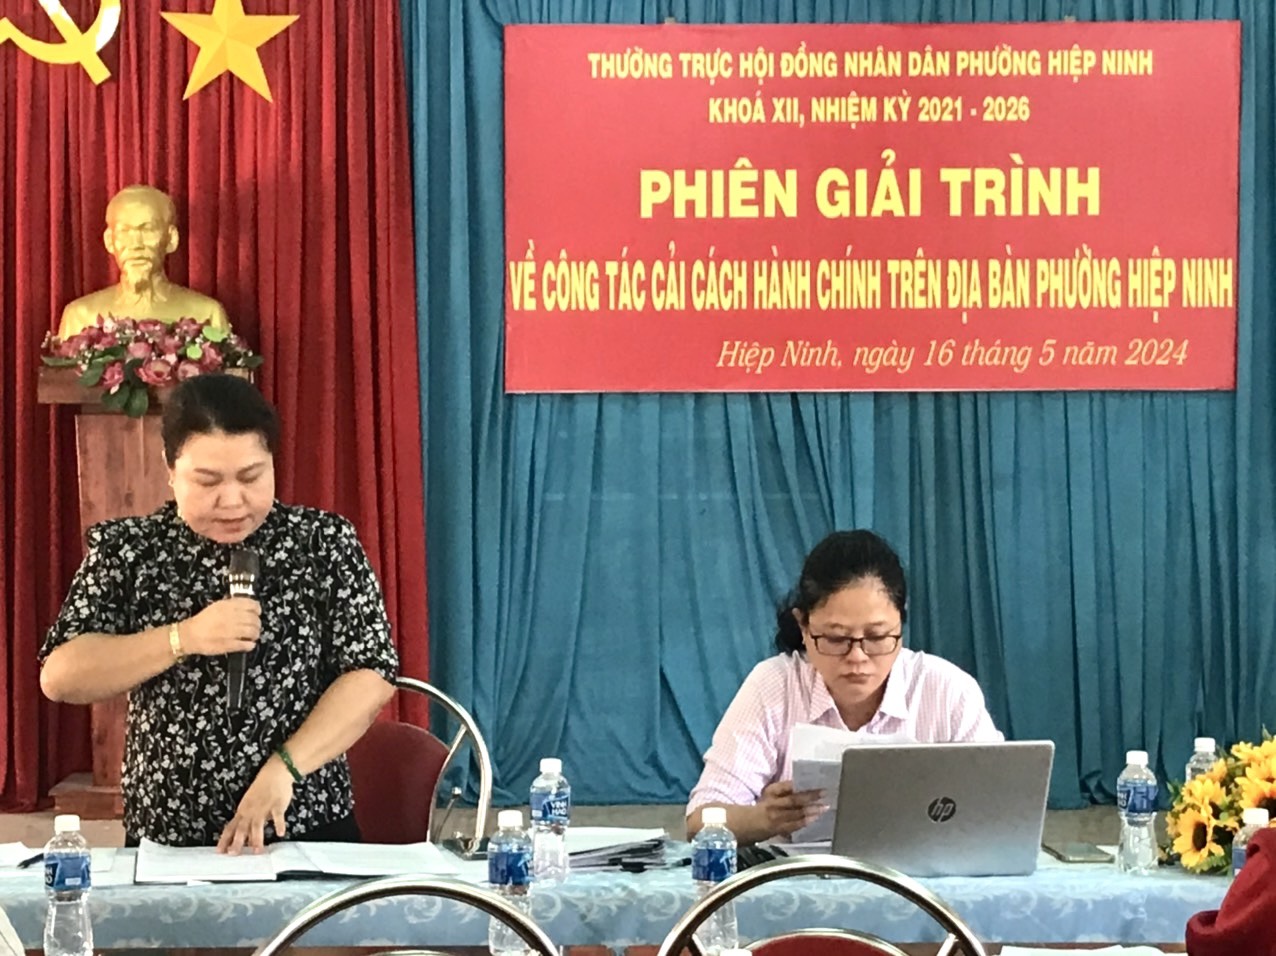 HĐND phường Hiệp Ninh: tổ chức phiên giải trình về công tác cải cách hành chính trên địa bàn phường Hiệp Ninh